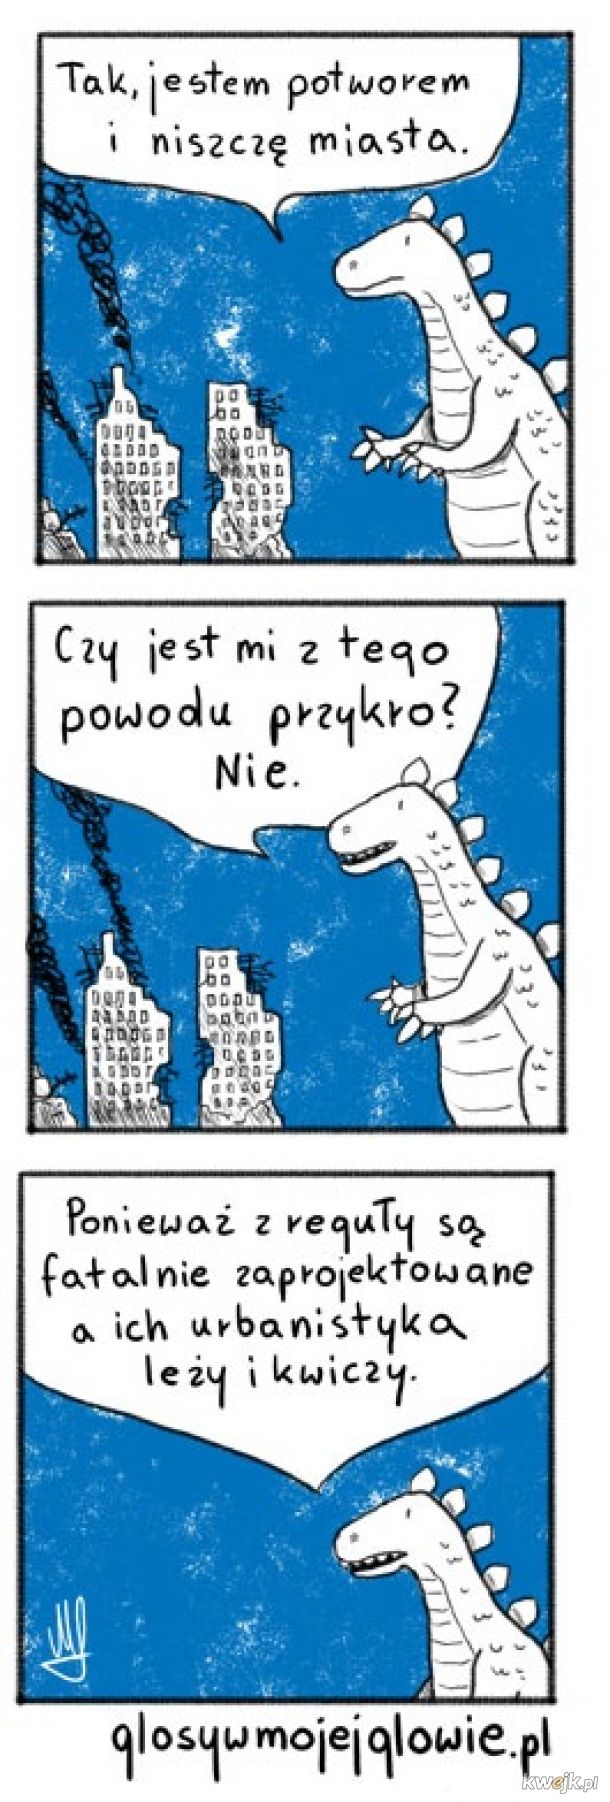 Trafne spostrzeżenie Godzilli, czyli abstrakcyjne komiksy Maćka Łazowskiego, obrazek 1